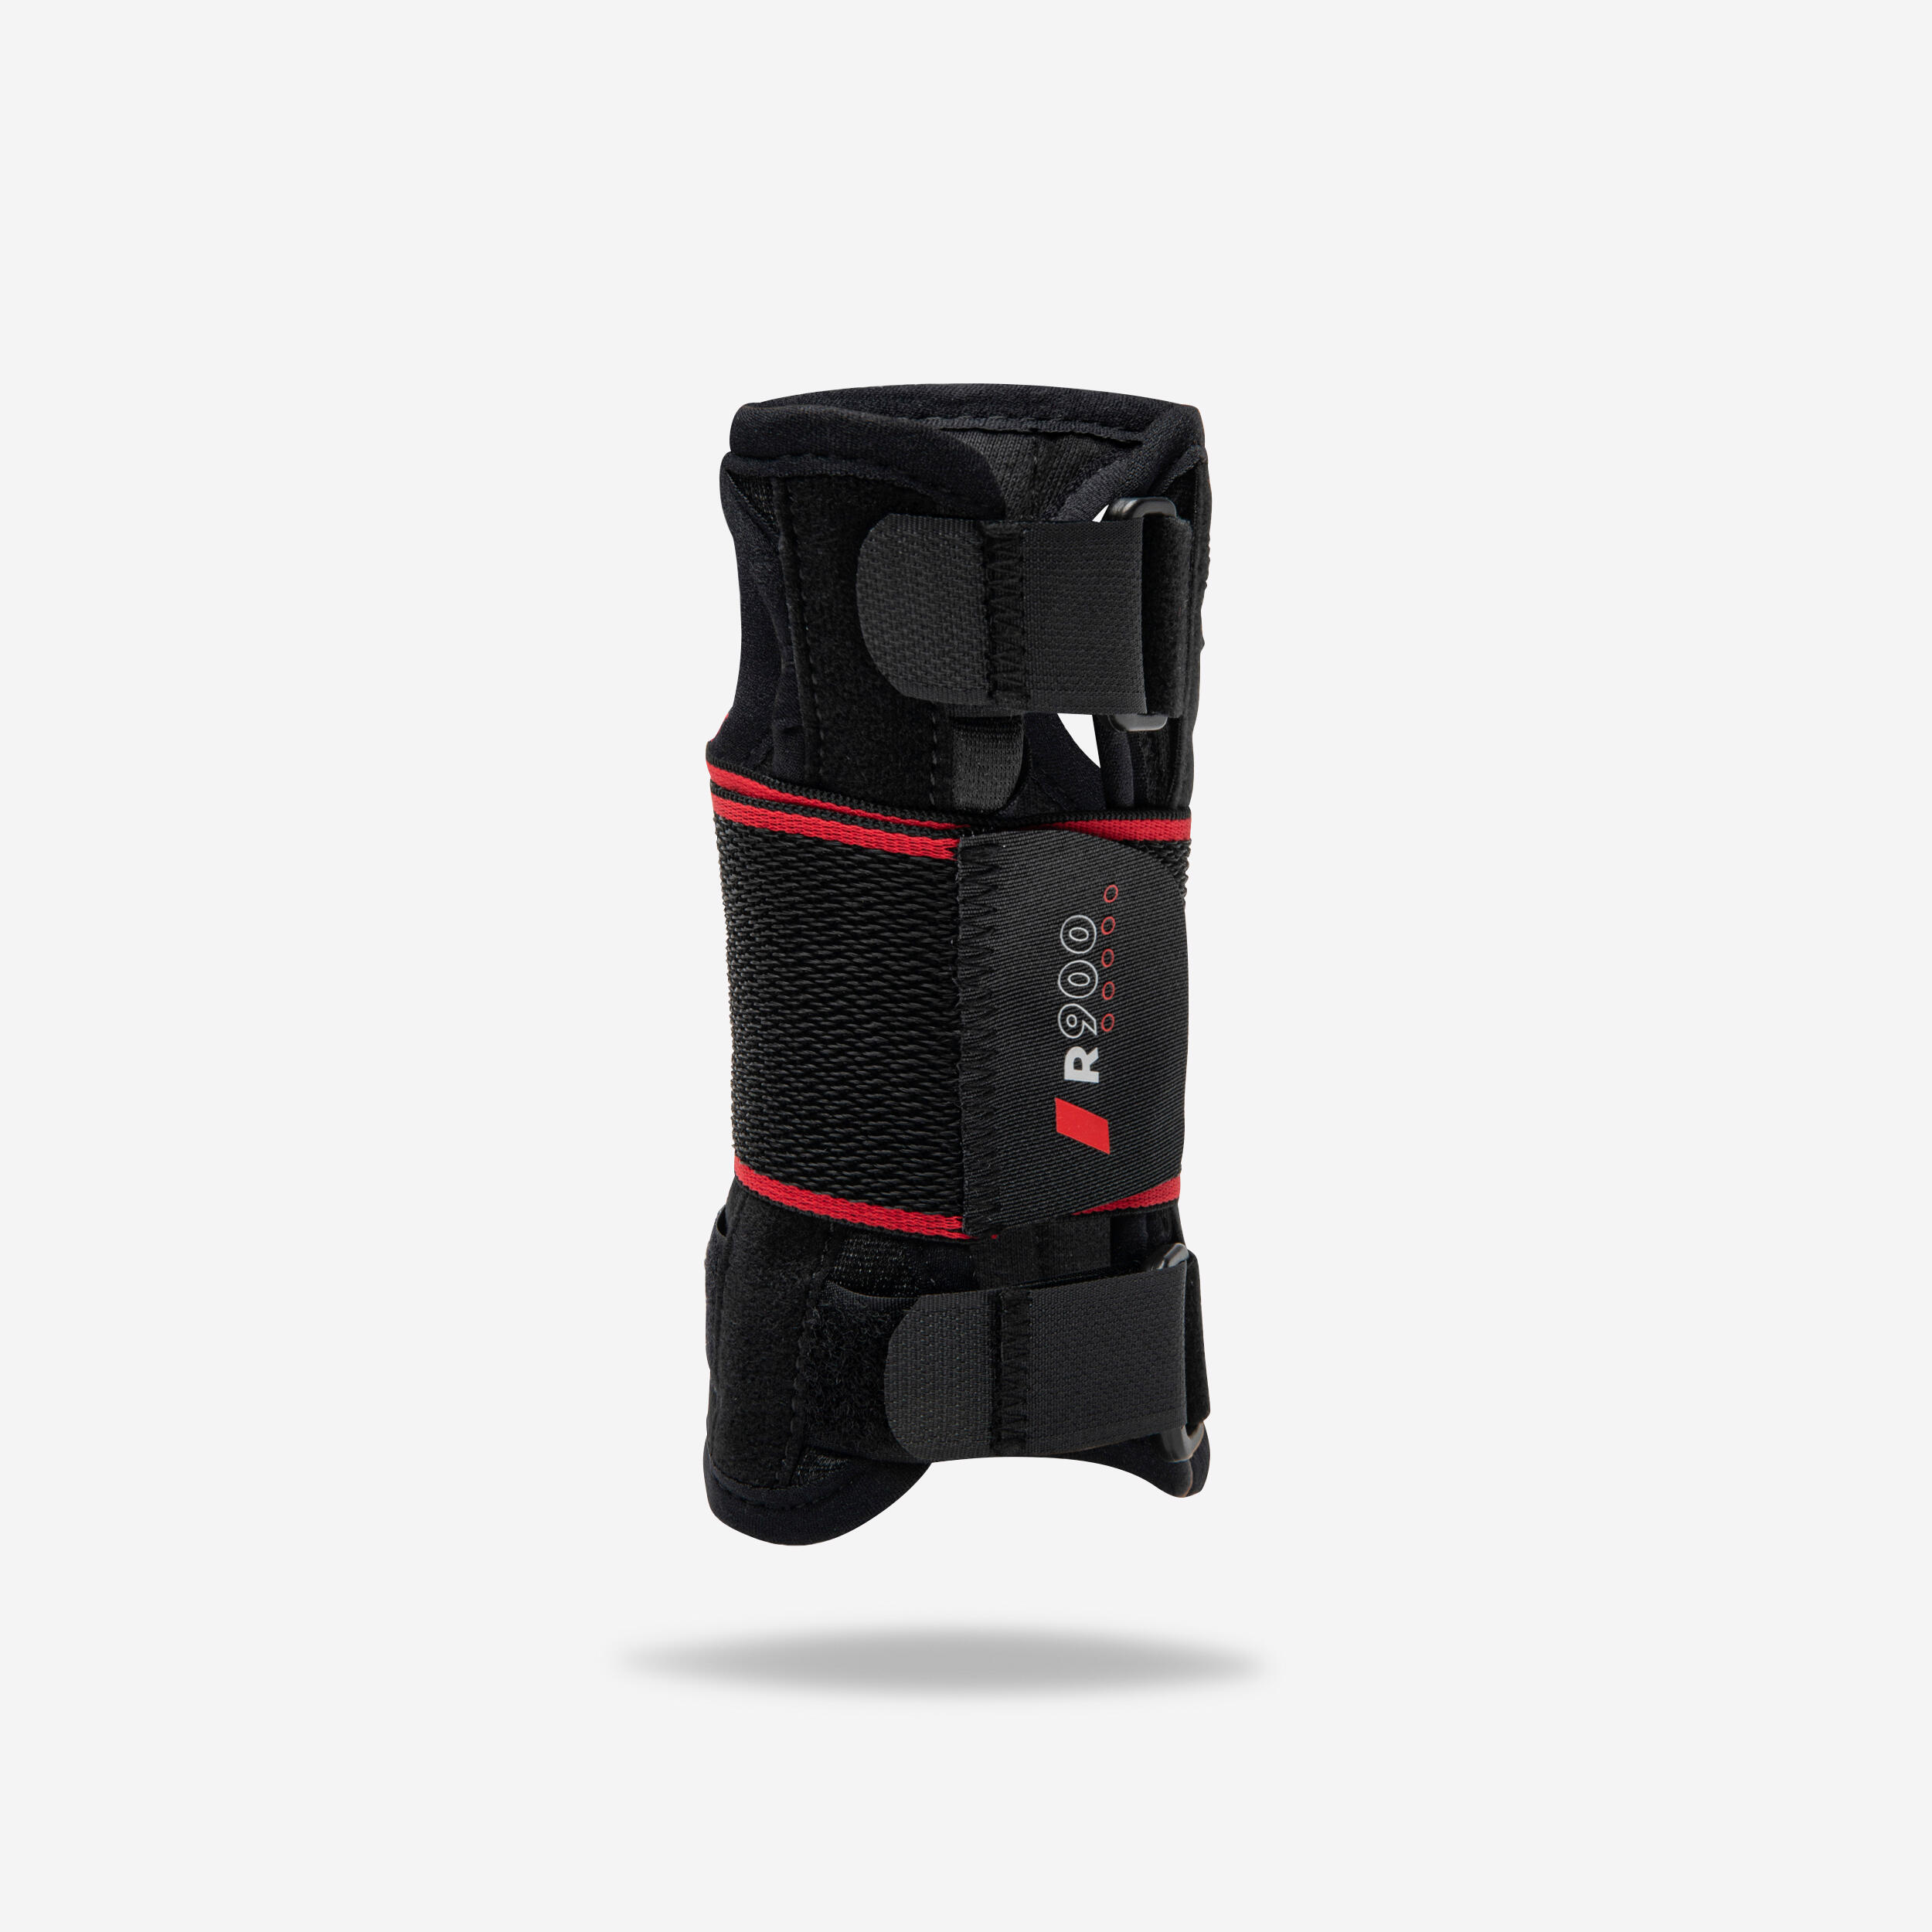 Bandage protecteur de poignet de sport, équipement de protection